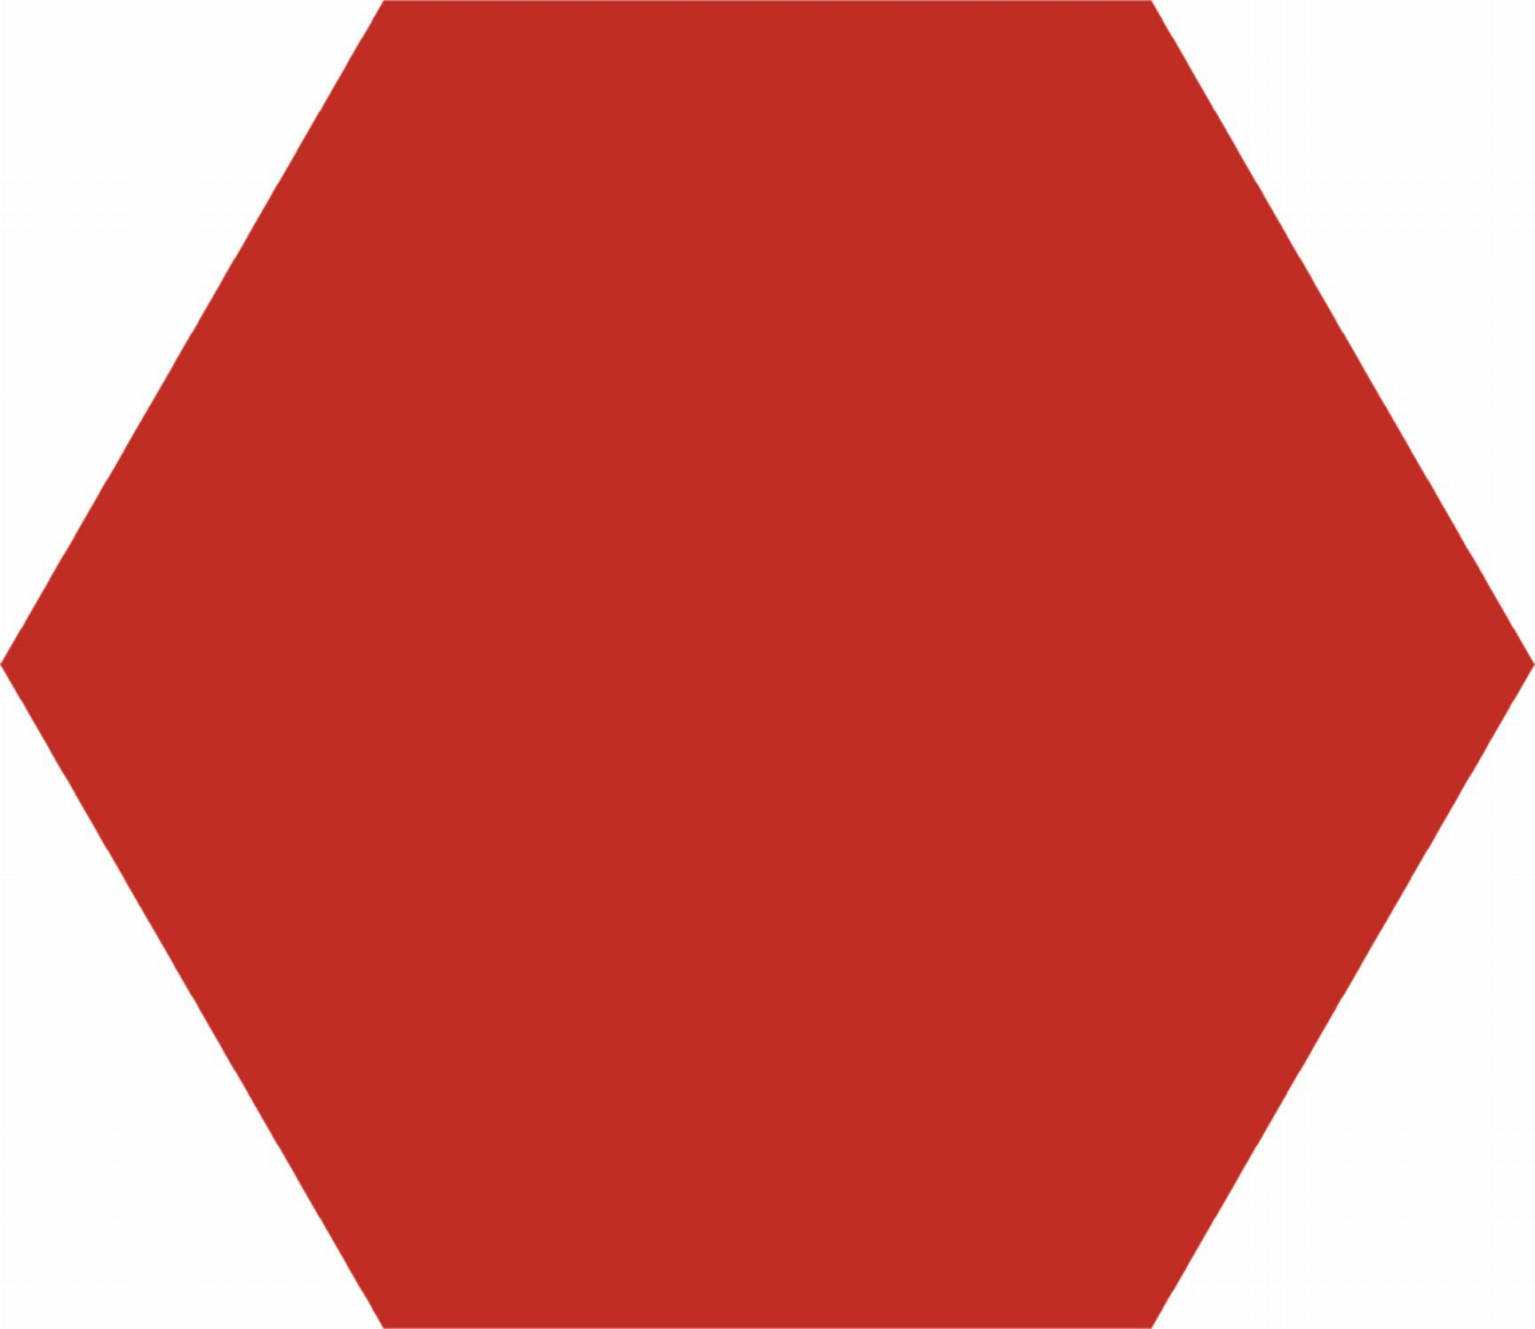 Basic Red Hex 25 | Codicer